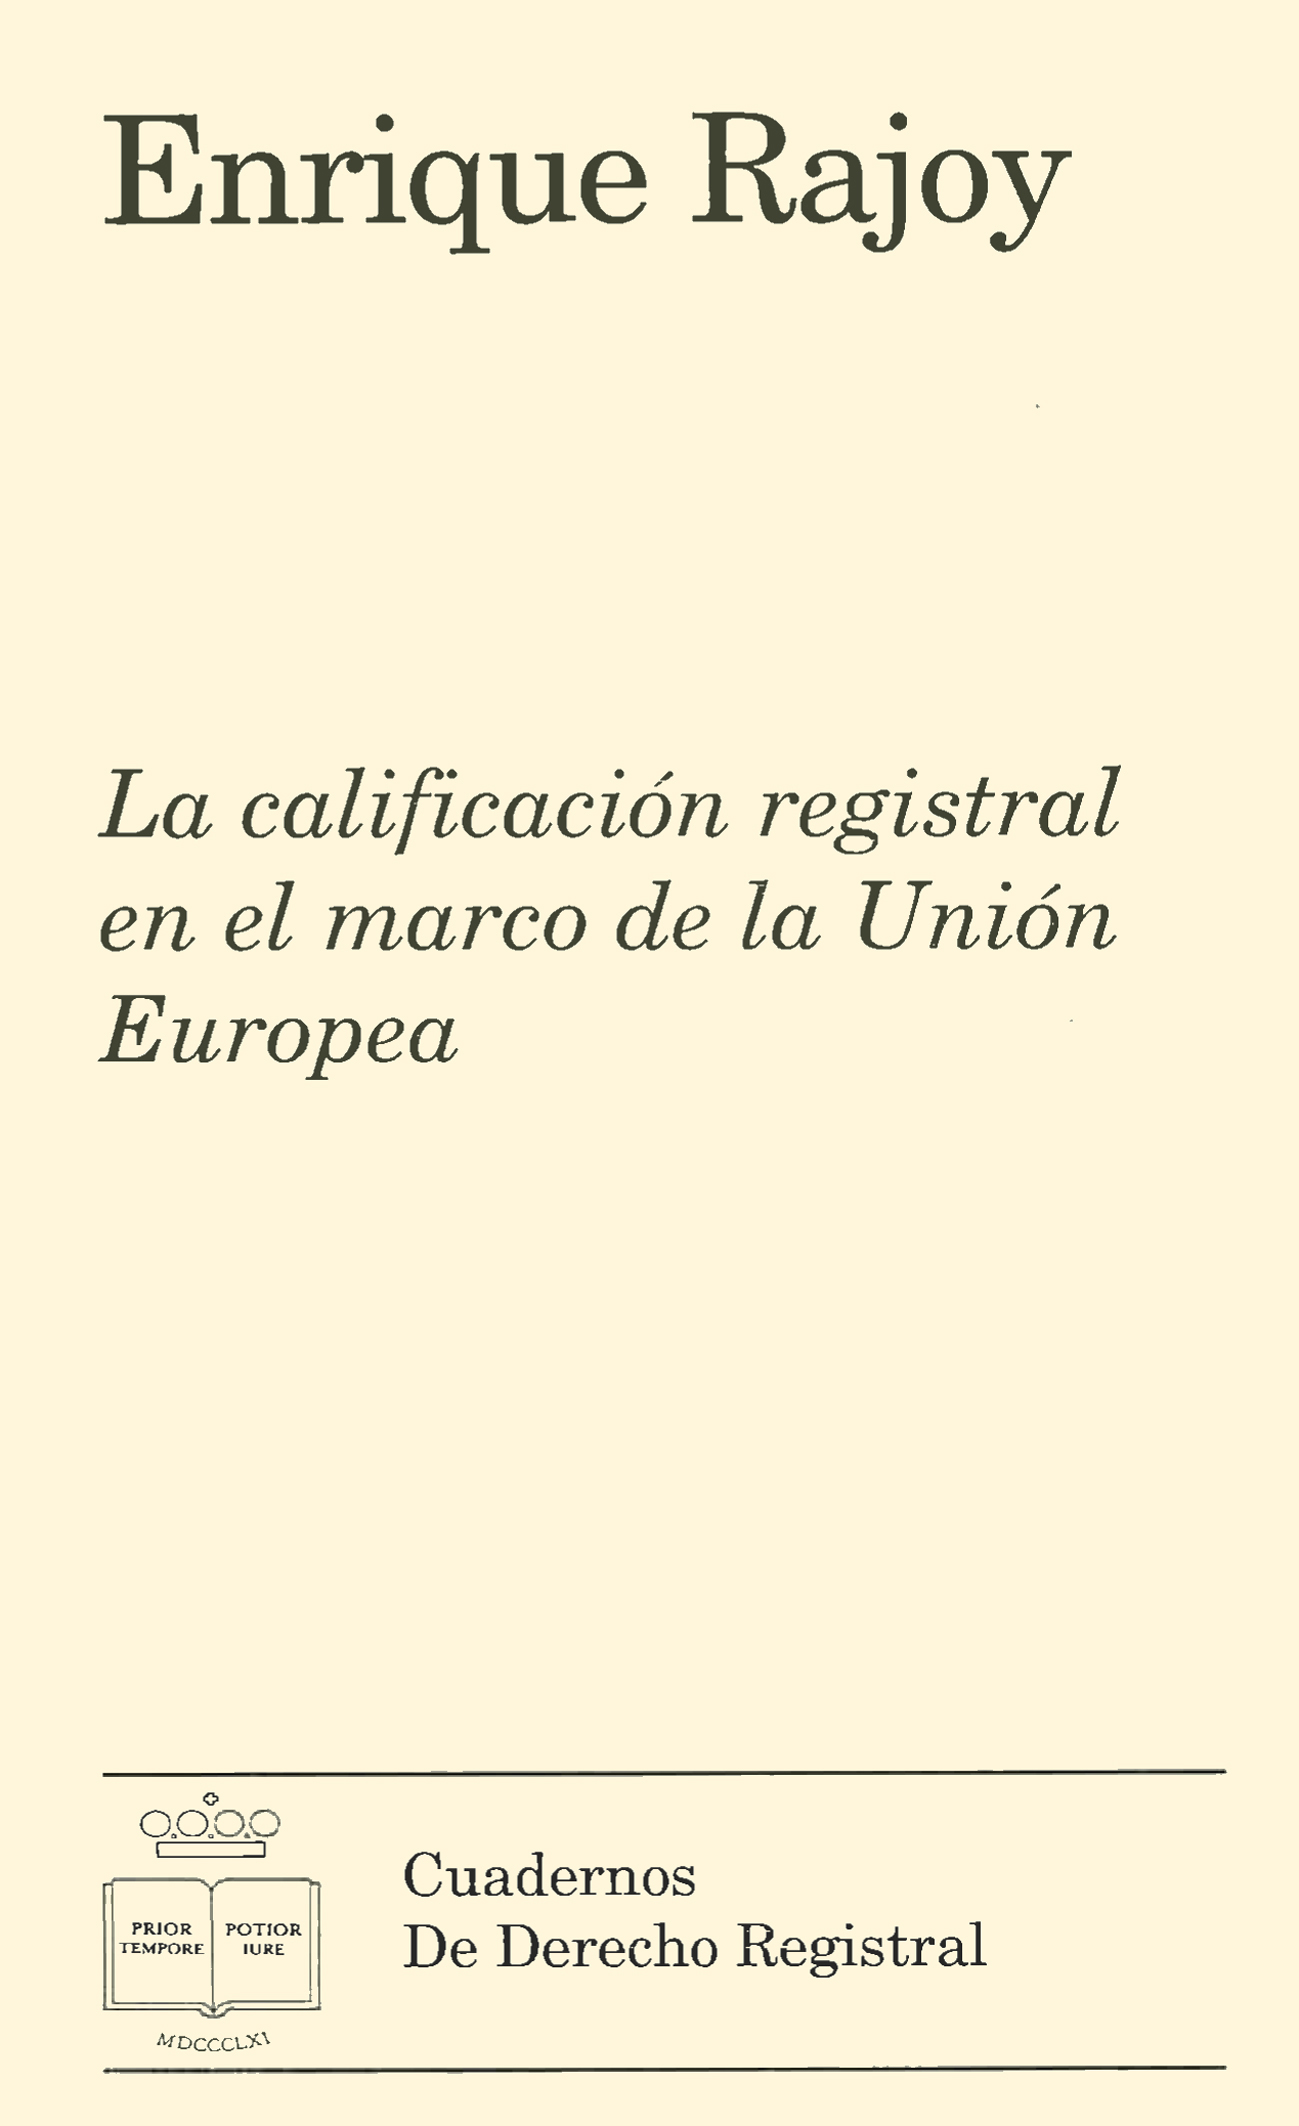 La calificación registral en el marco de la Unión Europea